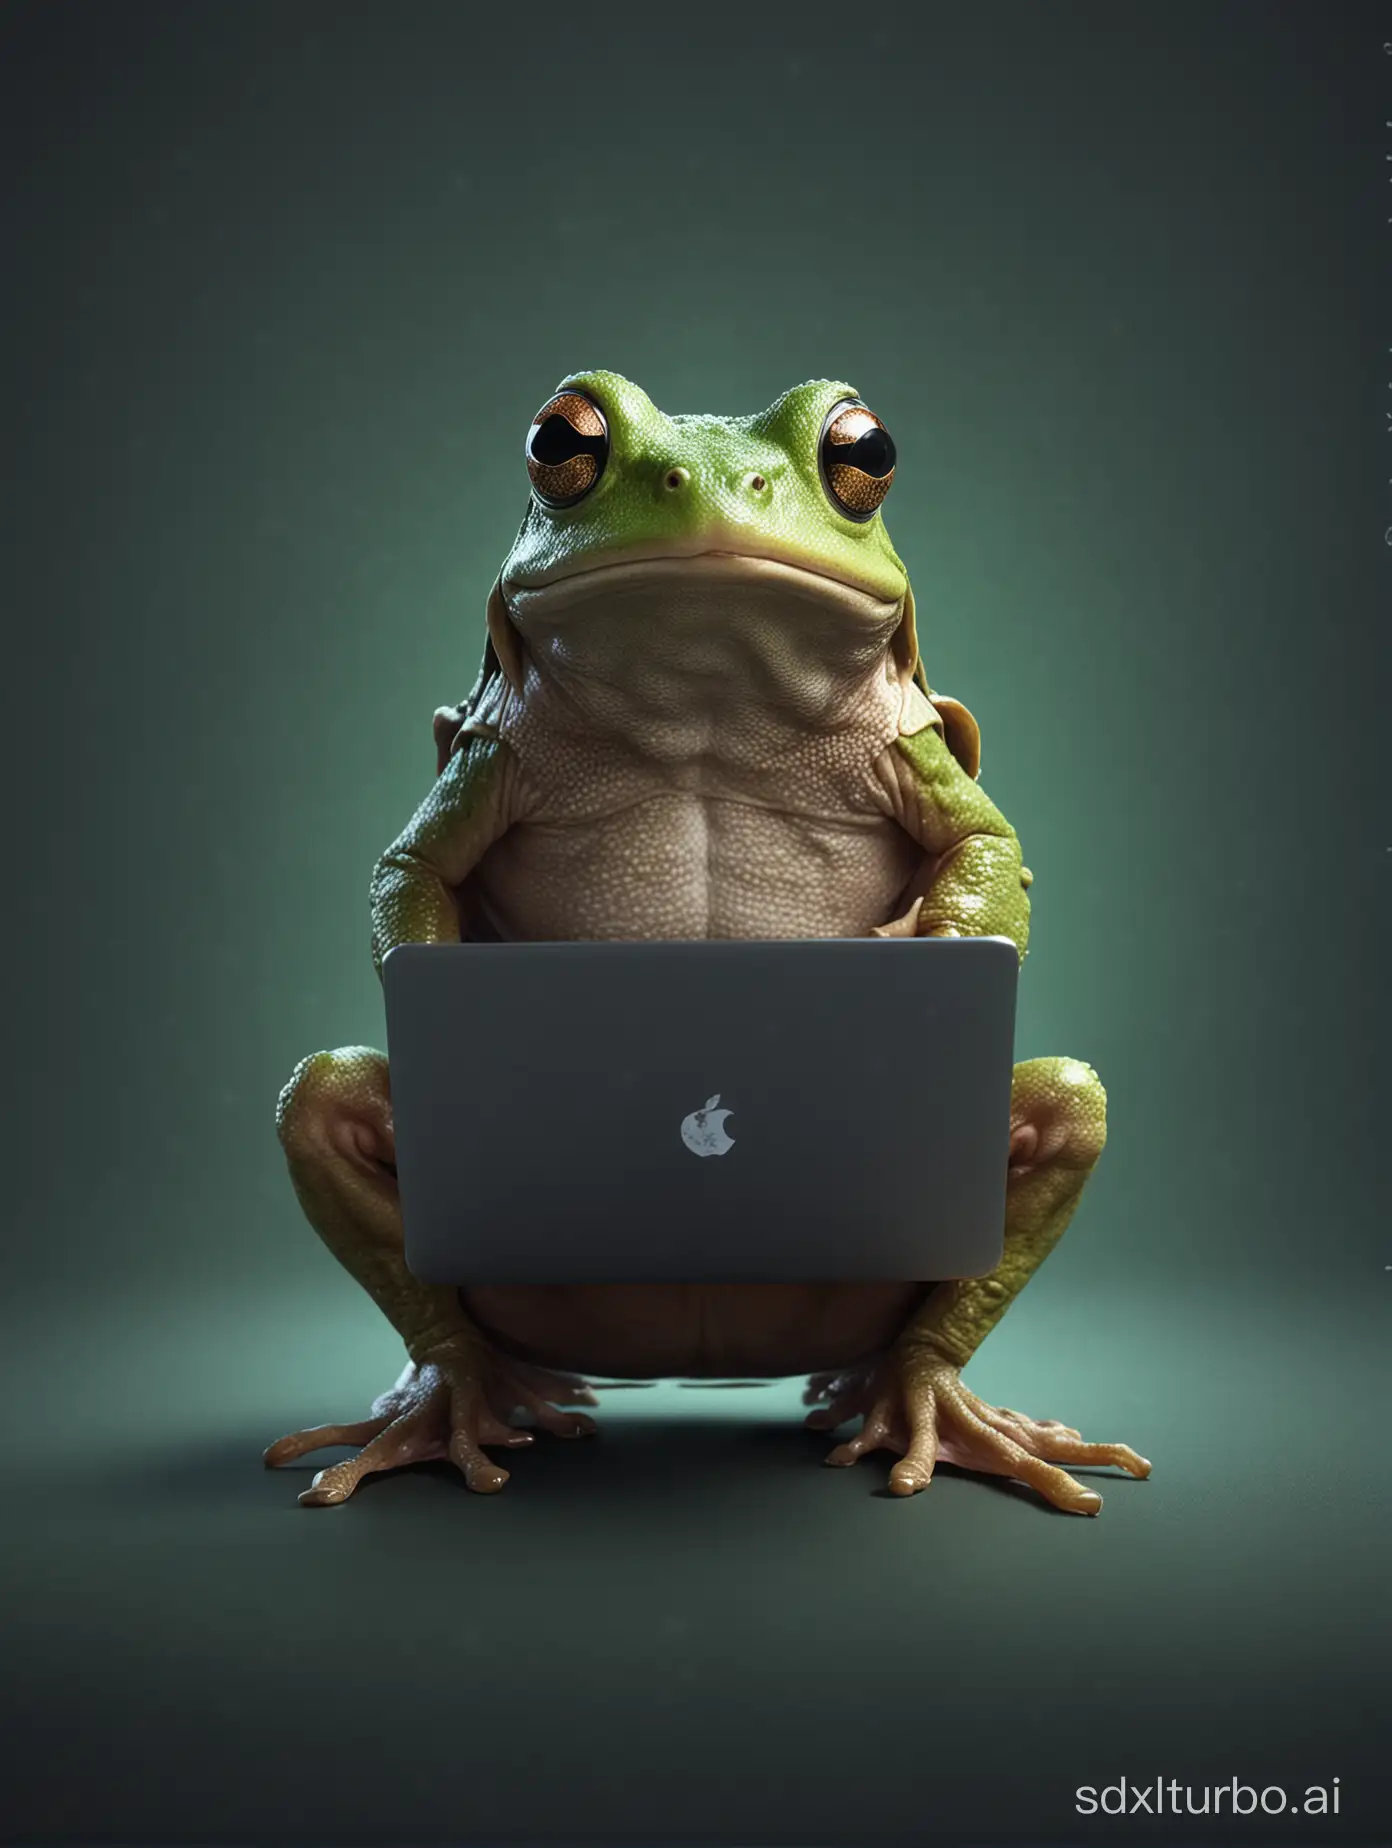 A hacker frog